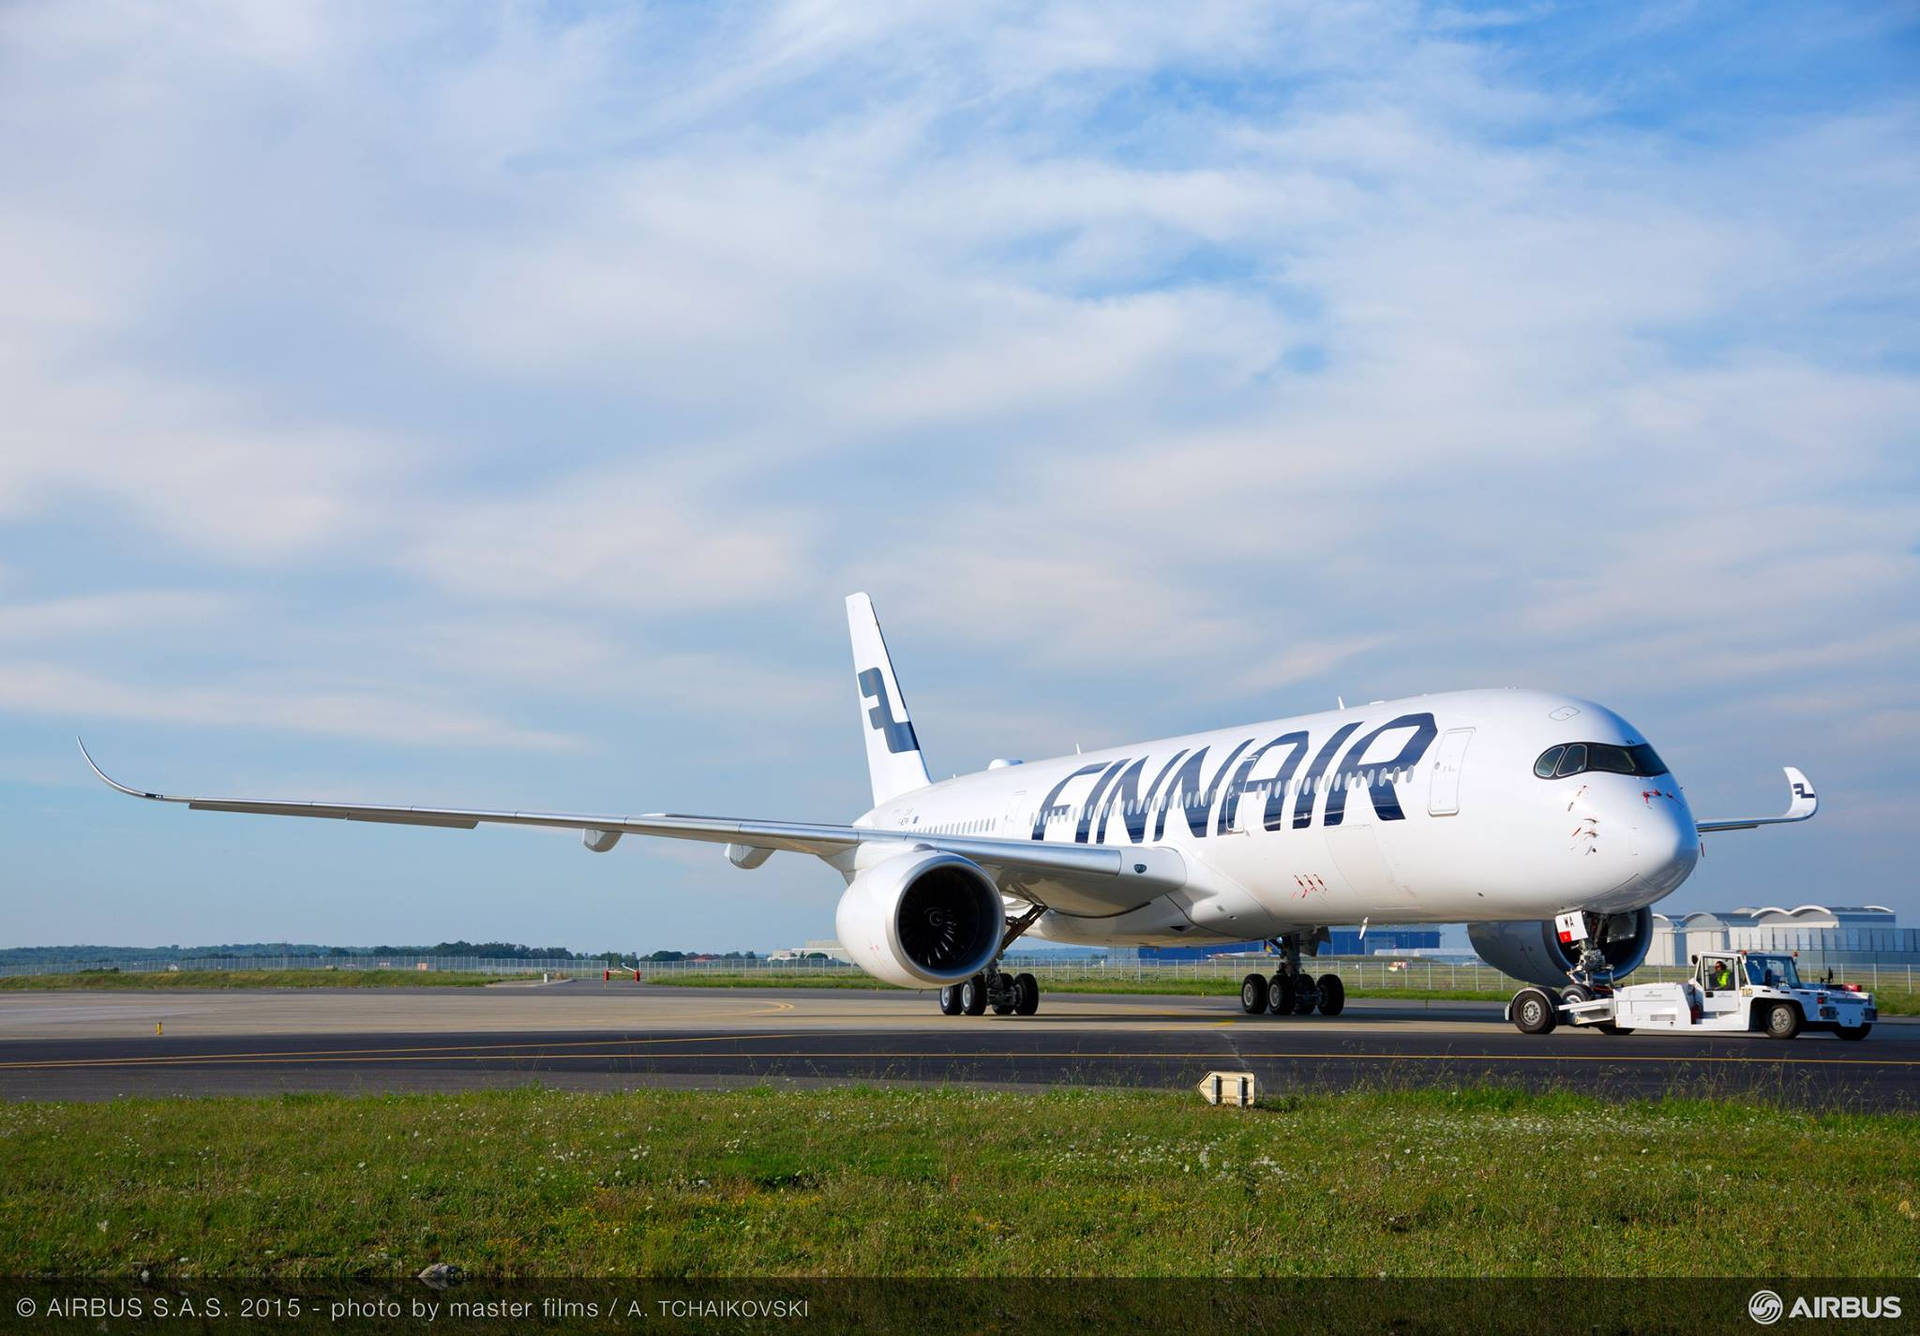 Finnair lander på en smuk himmel. Wallpaper